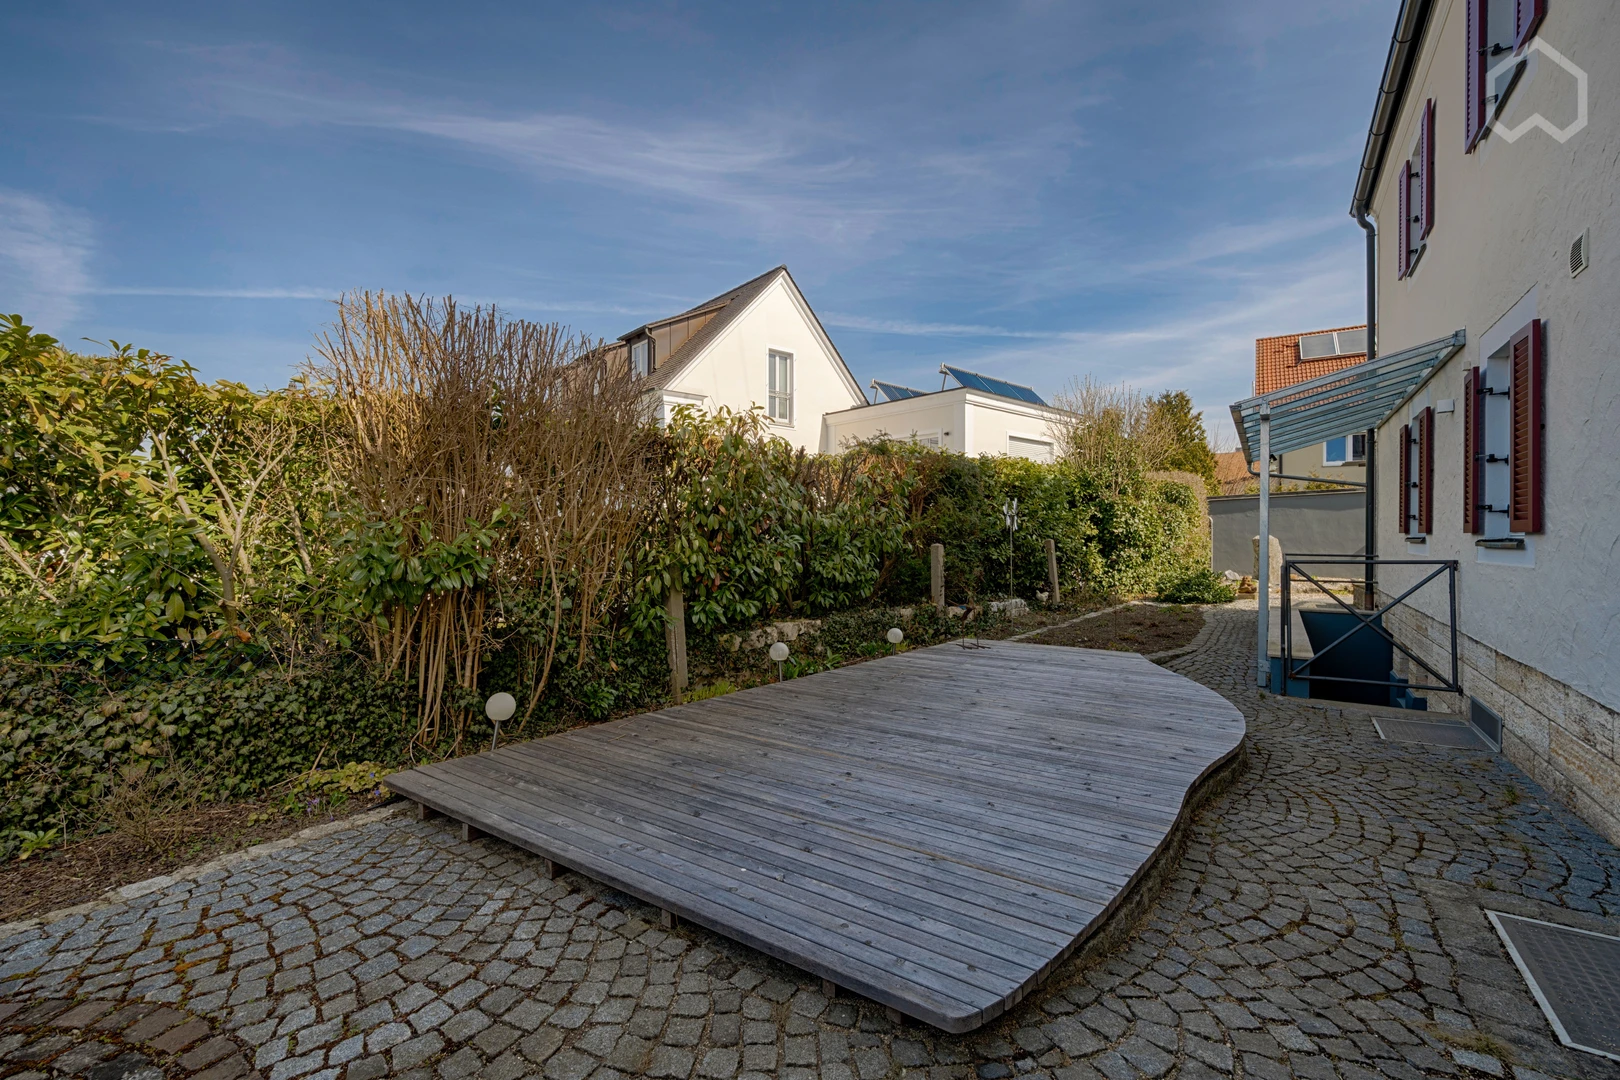 Habitación privada barata en Regensburg